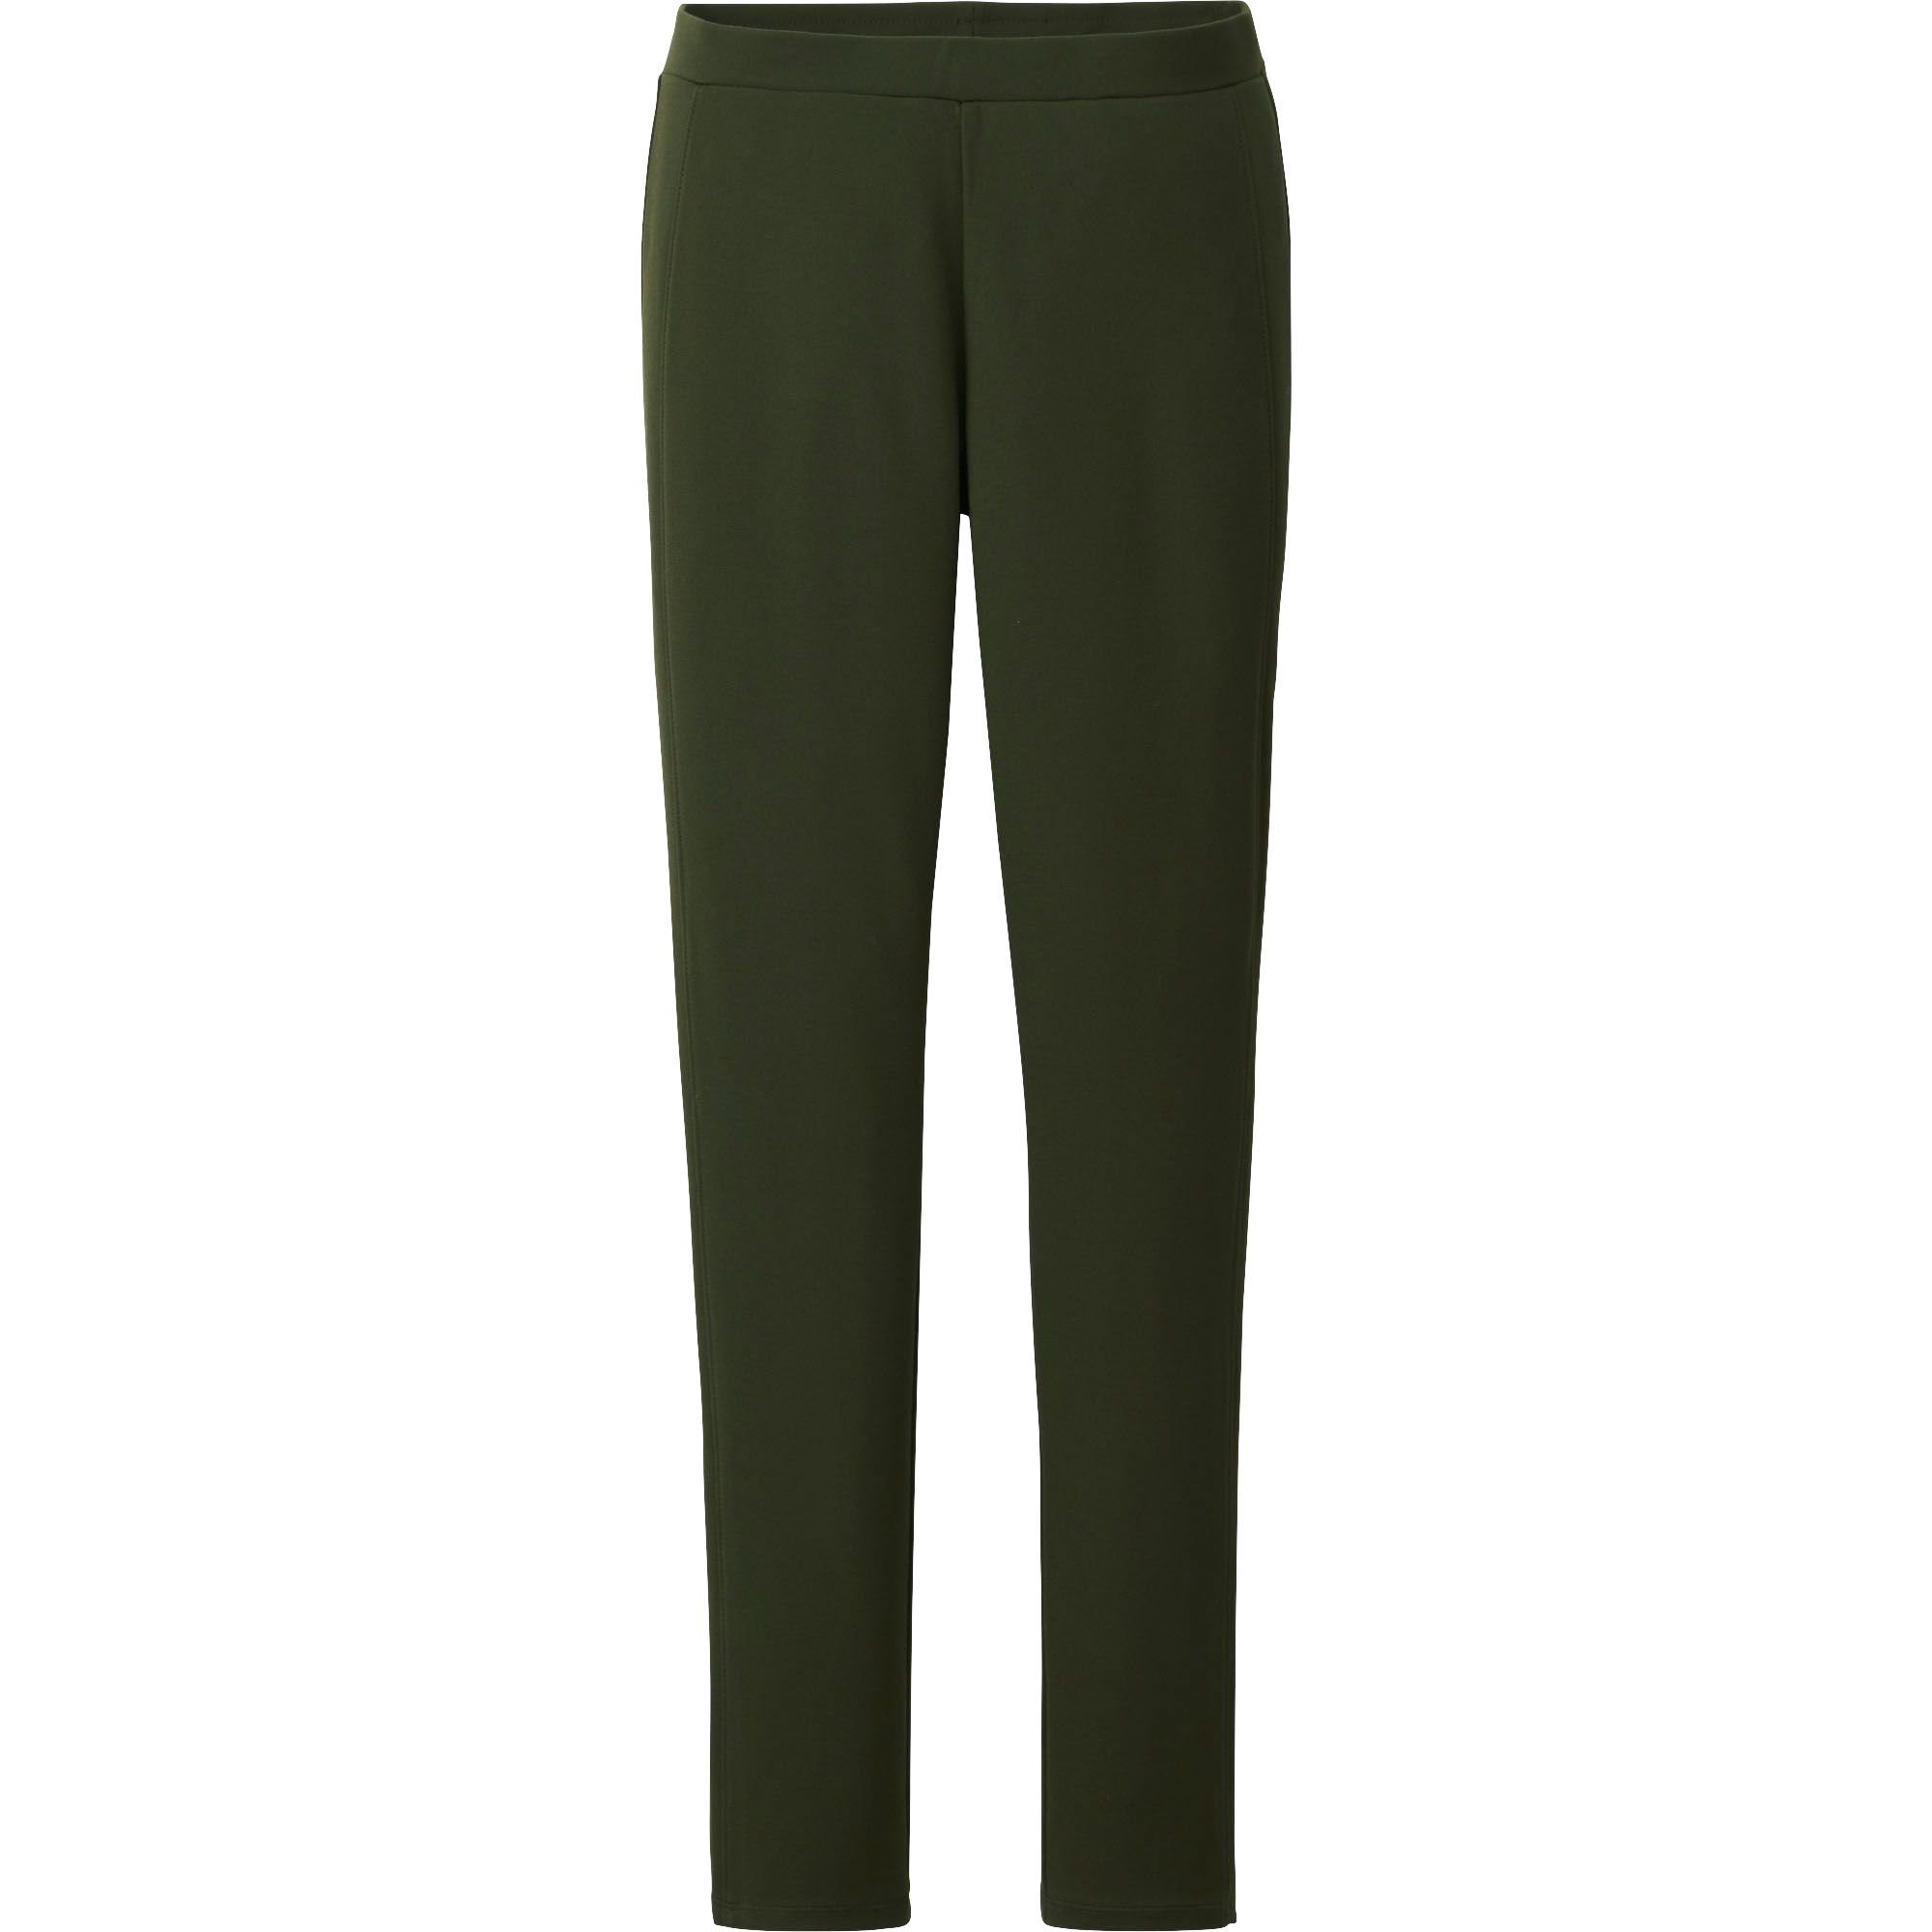 Uniqlo Side Stripe Ponte Leggings Trousers in Green (DARK GREEN) | Lyst